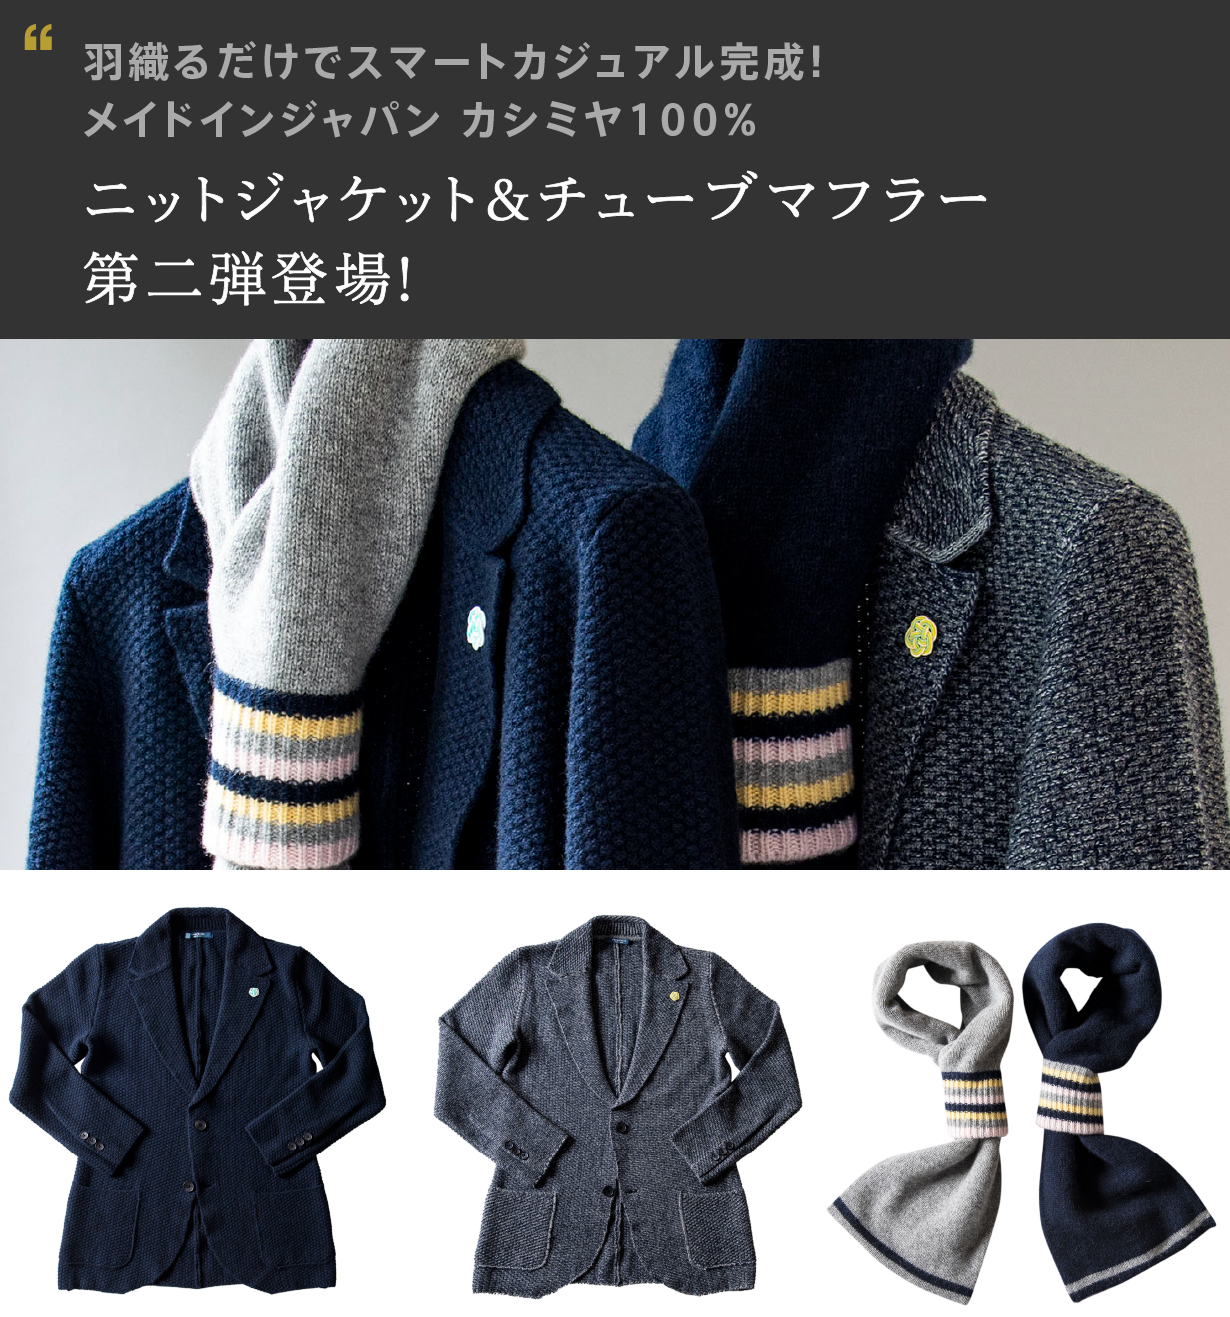 【カシミヤハニカム ニットジャケット&チューブマフラー】「Makuake」にて先行予約販売いたします